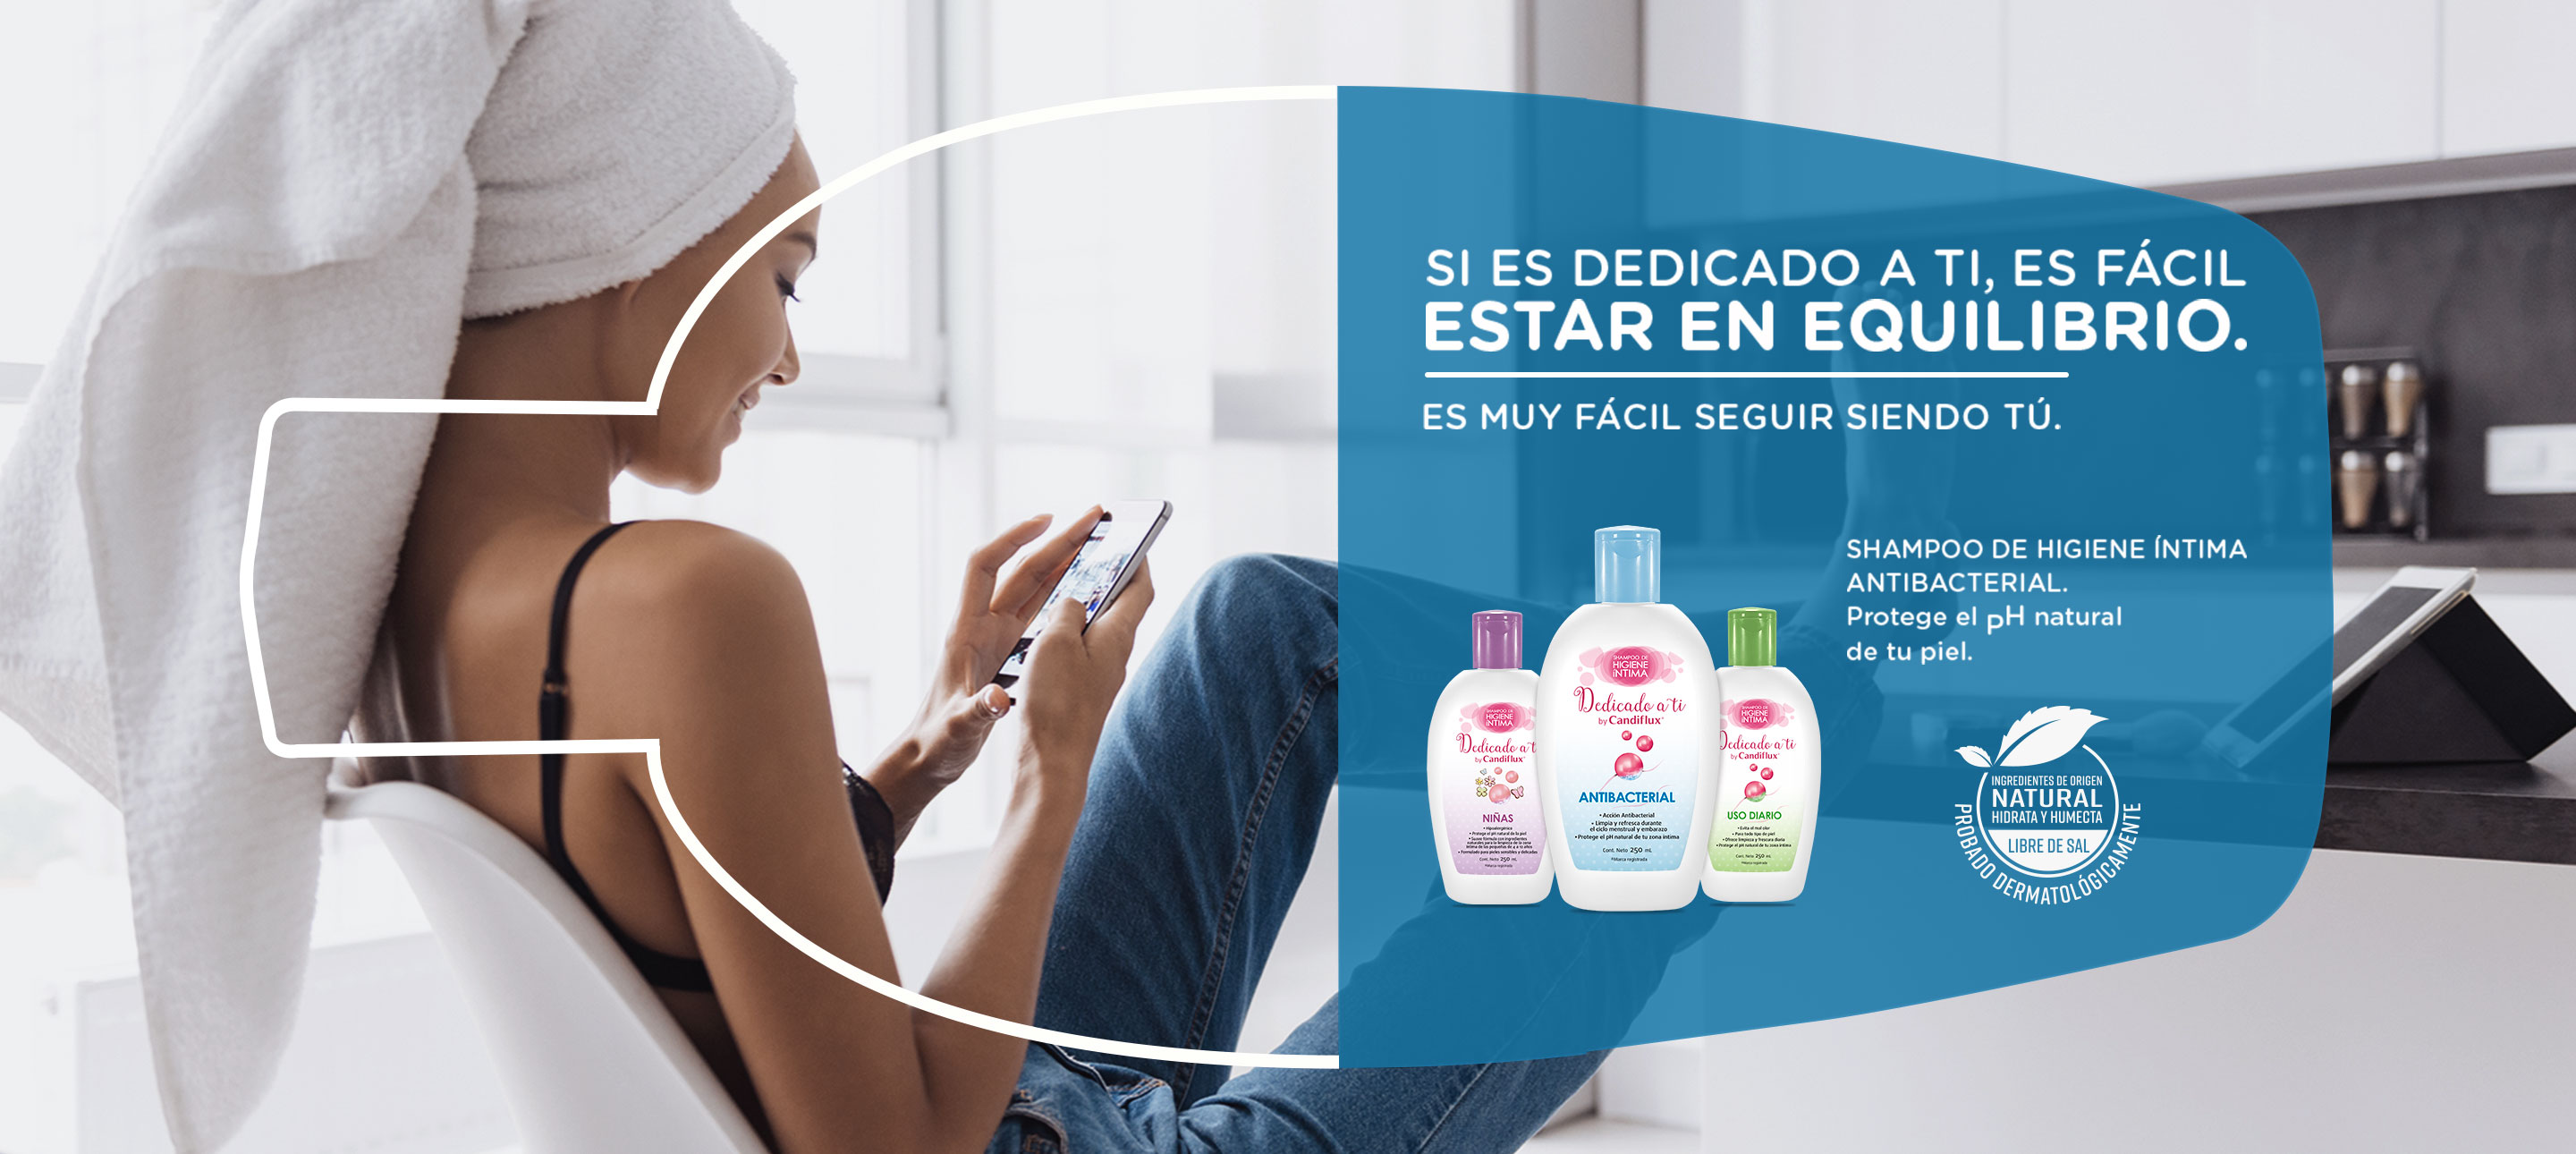 Precio Shampoo de higiene intima Candiflux 250 mL | Farmalisto MX